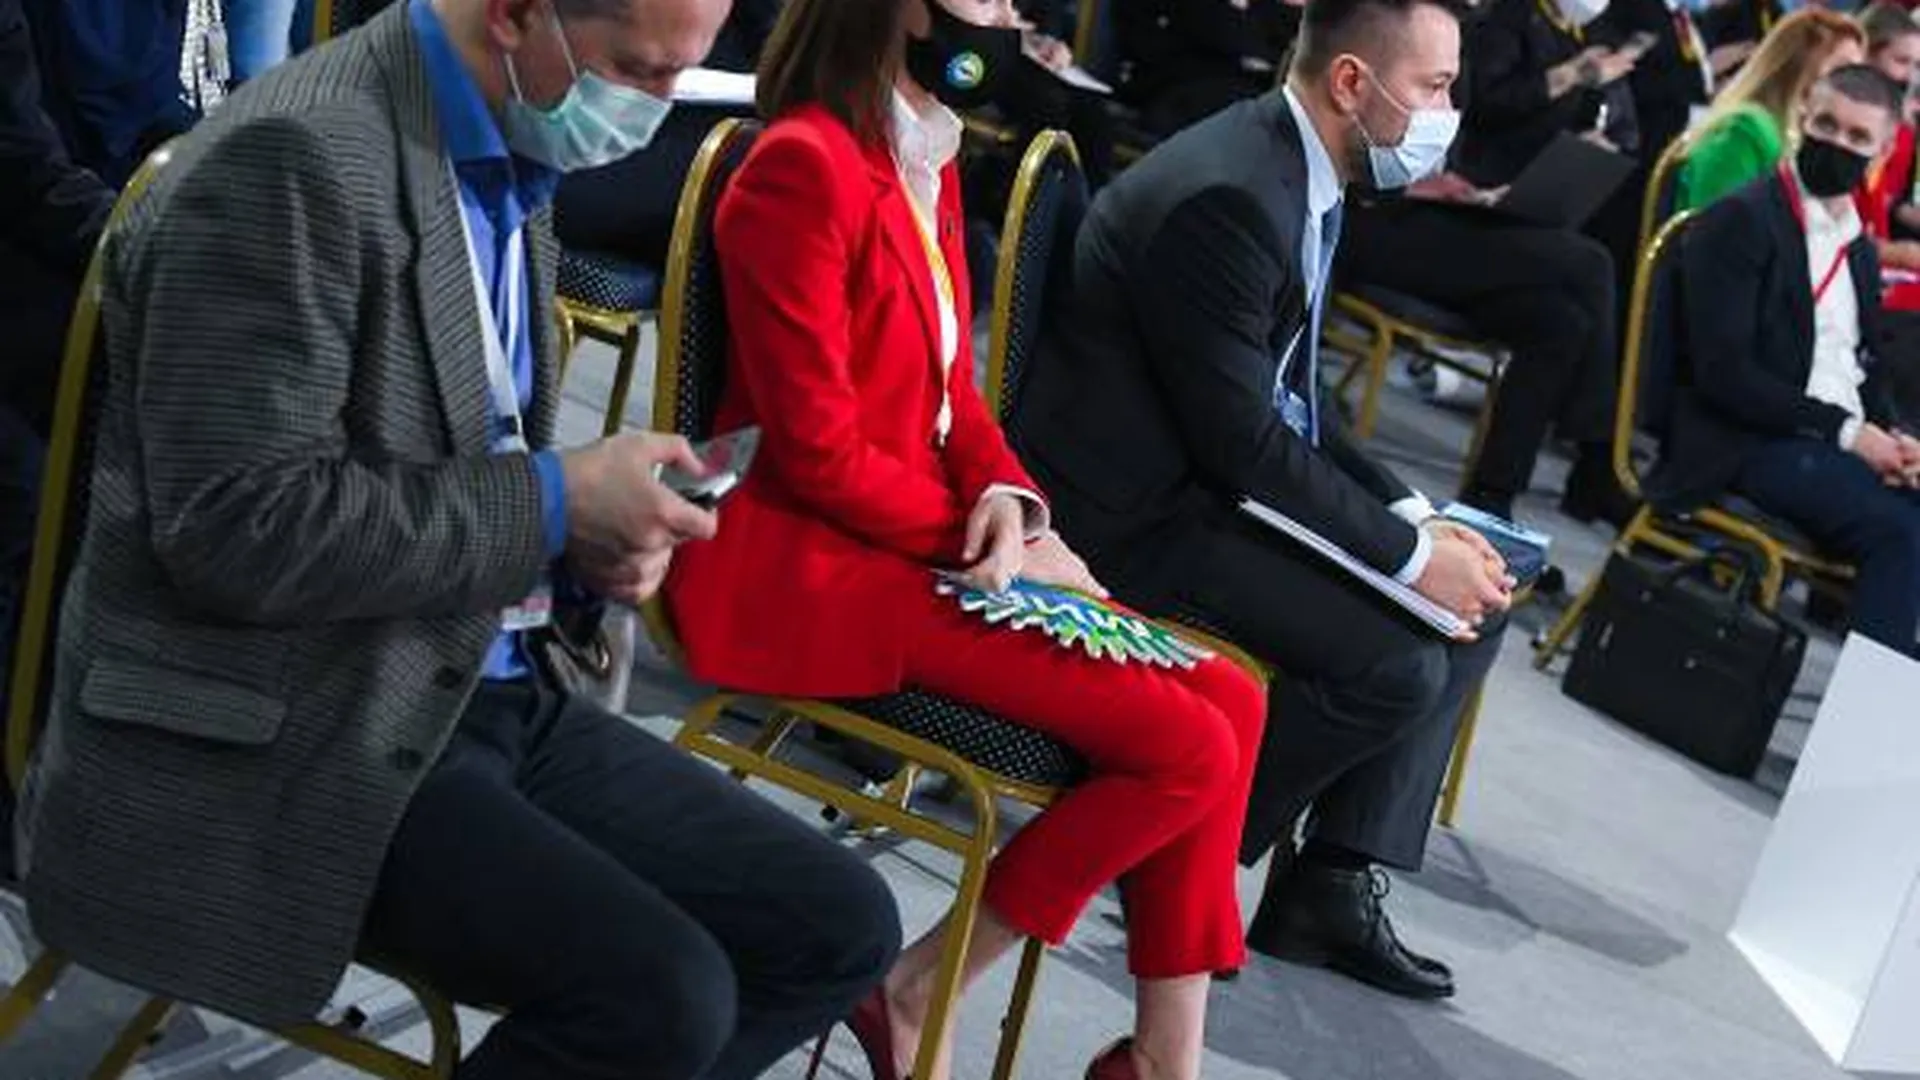 Имиджмейкер объяснил, почему журналистки пришли на пресс-конференцию Путина в красных пиджаках